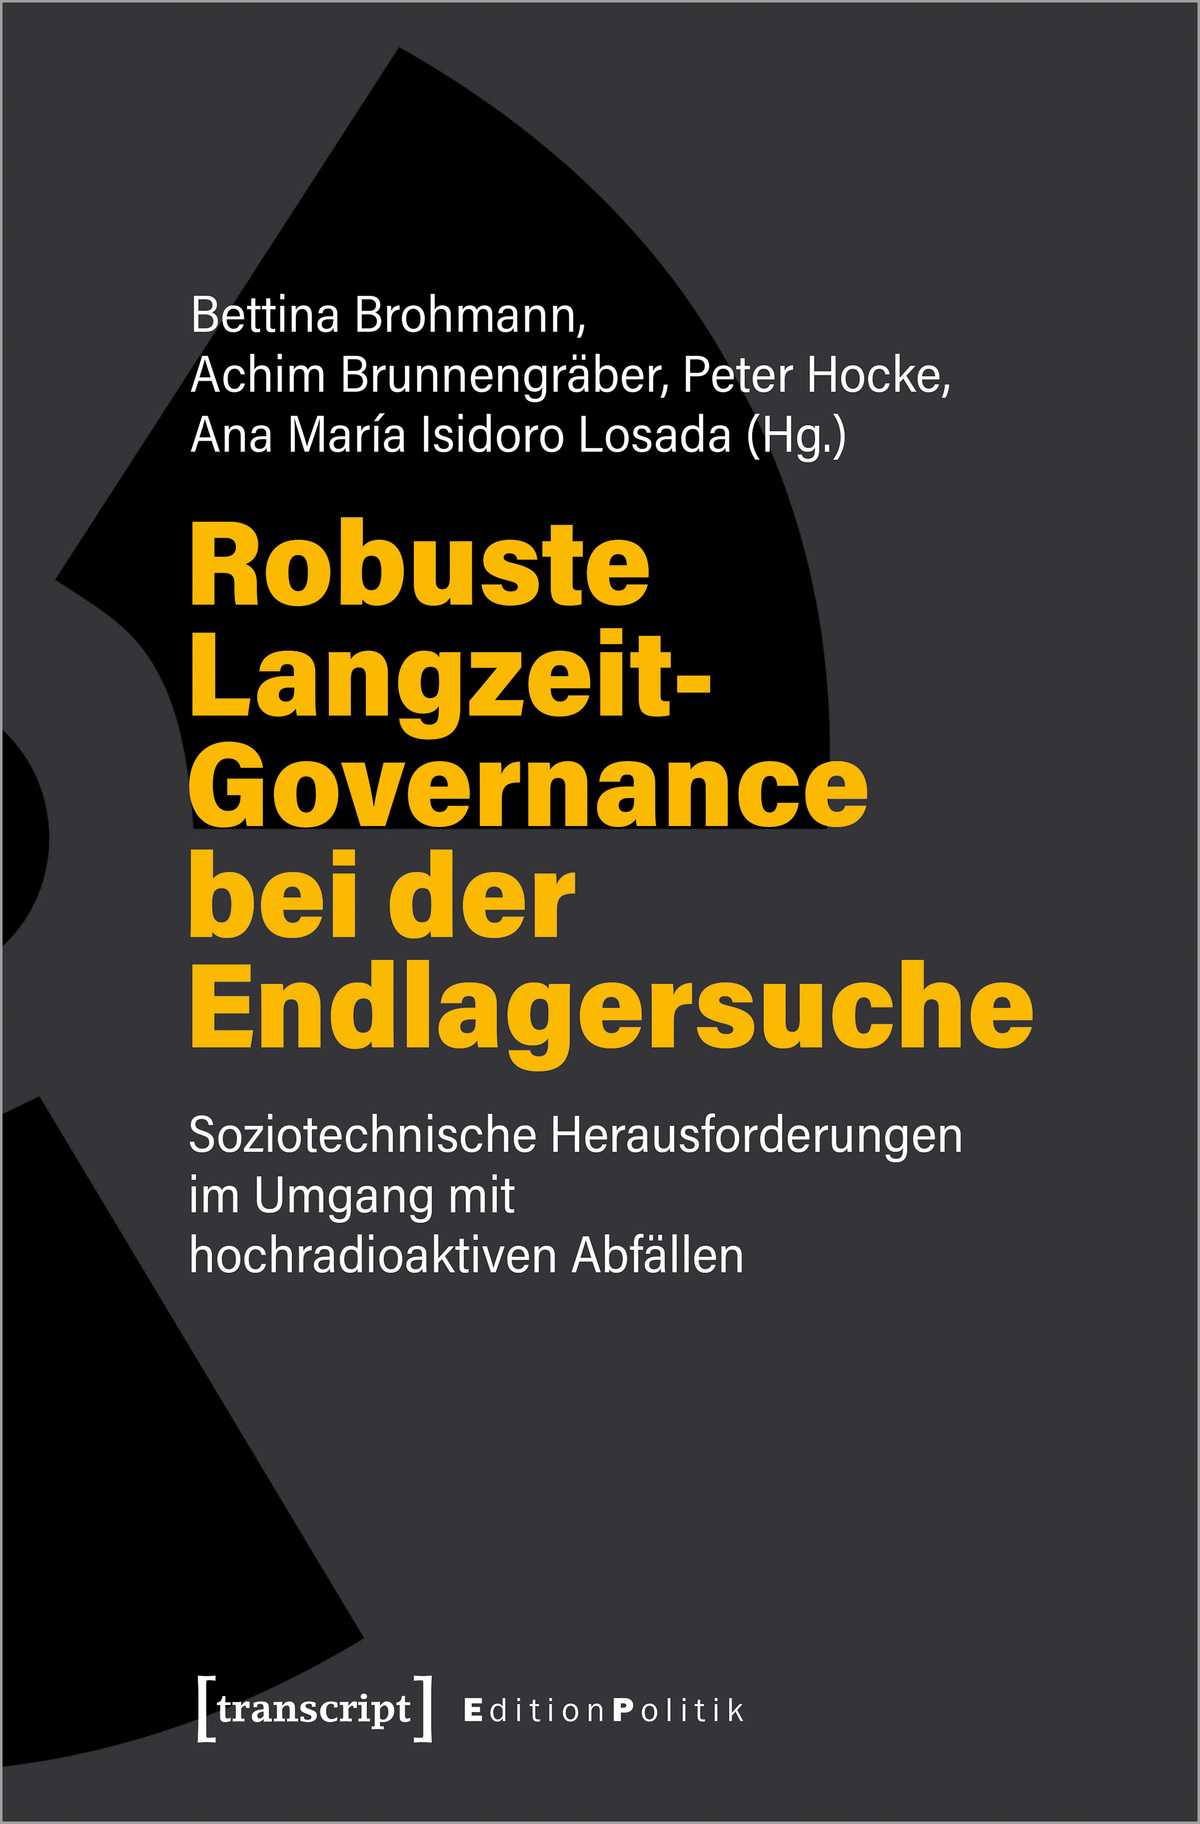 Buchcover "Robuste Langzeit-Governance bei der Endlagersuche"